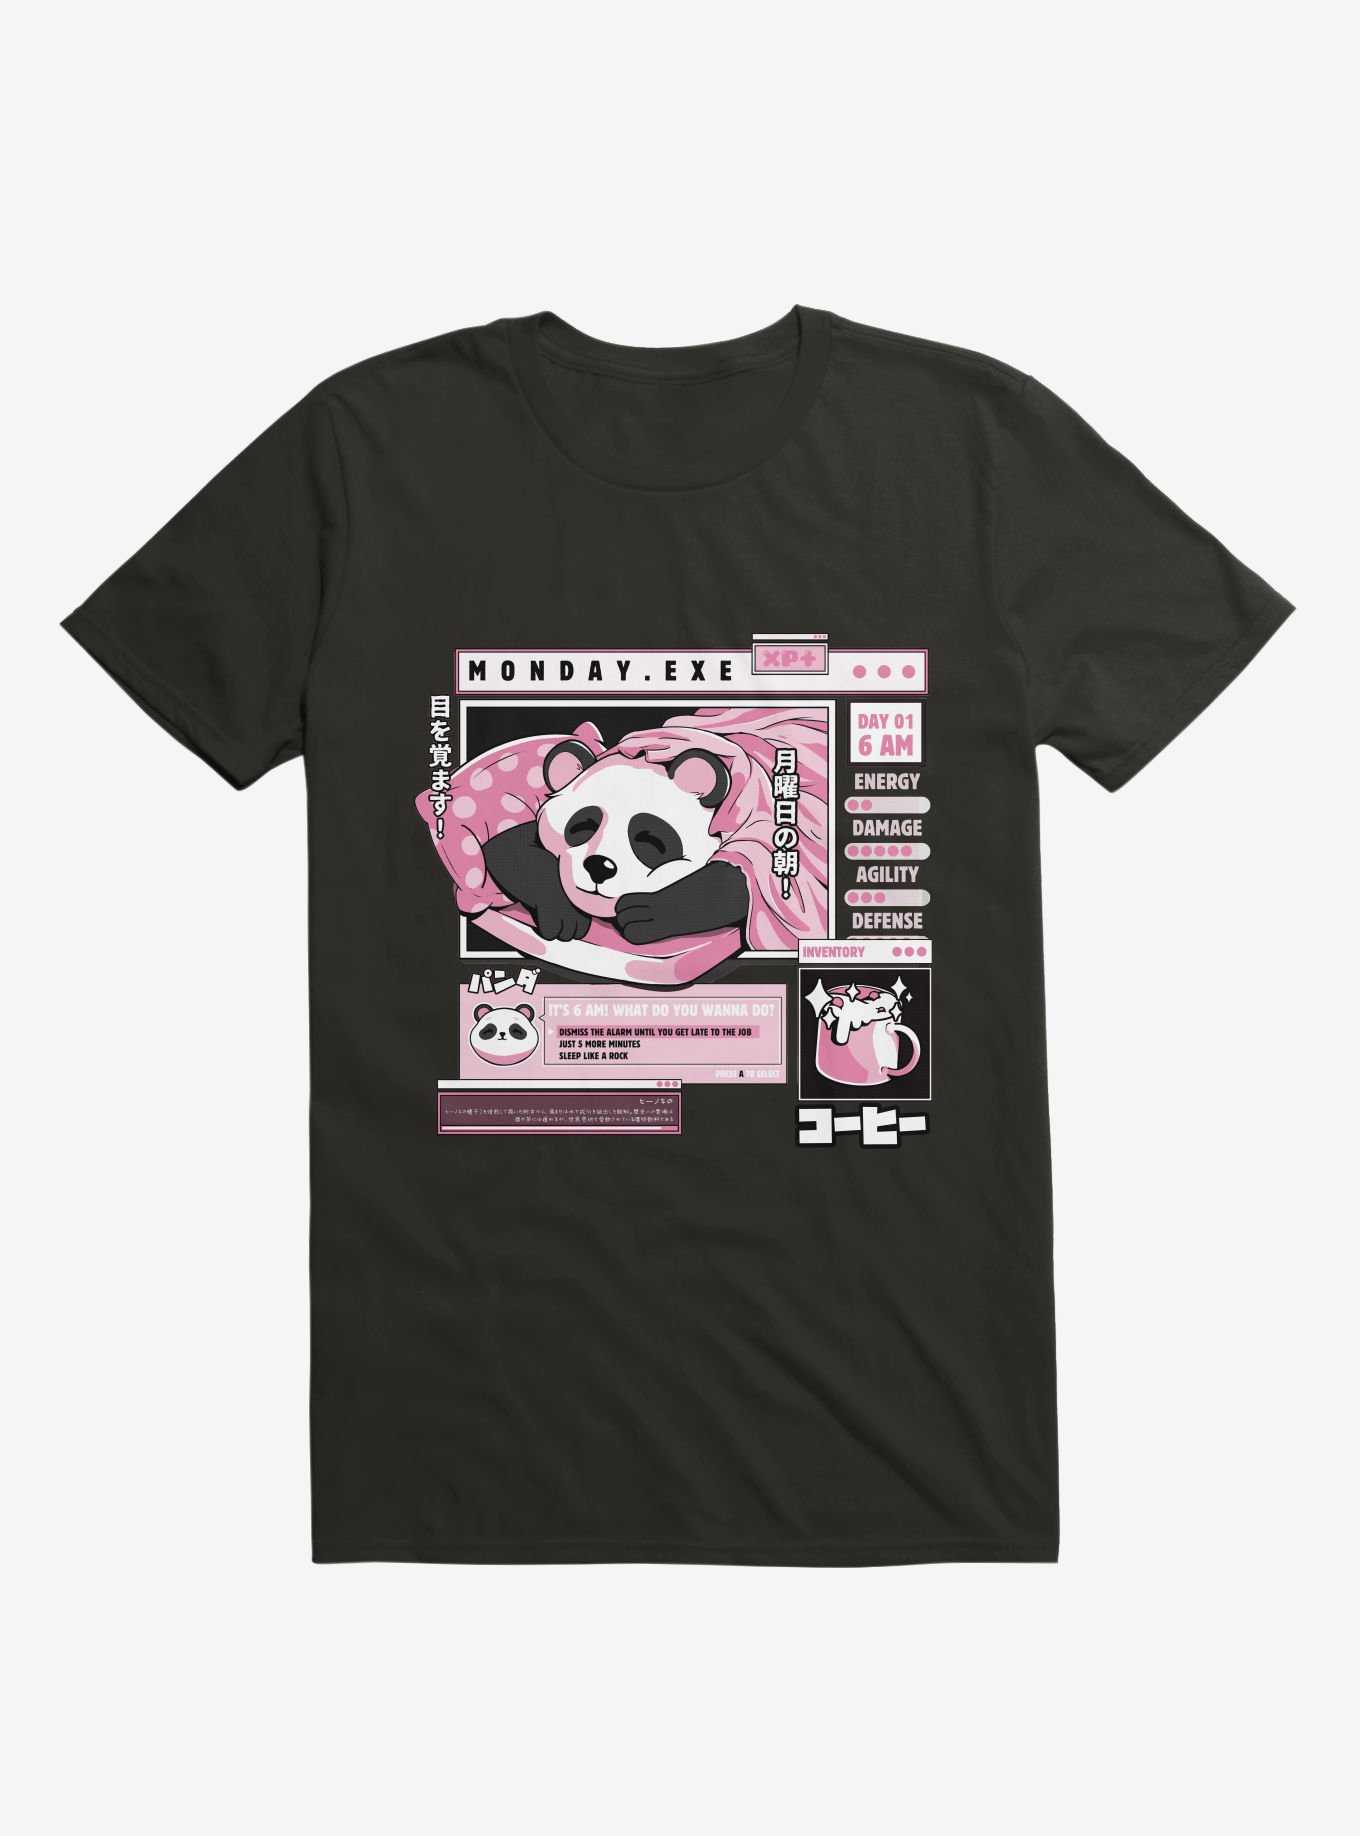 Monday Exe Sleeping Panda Black T-Shirt, , hi-res